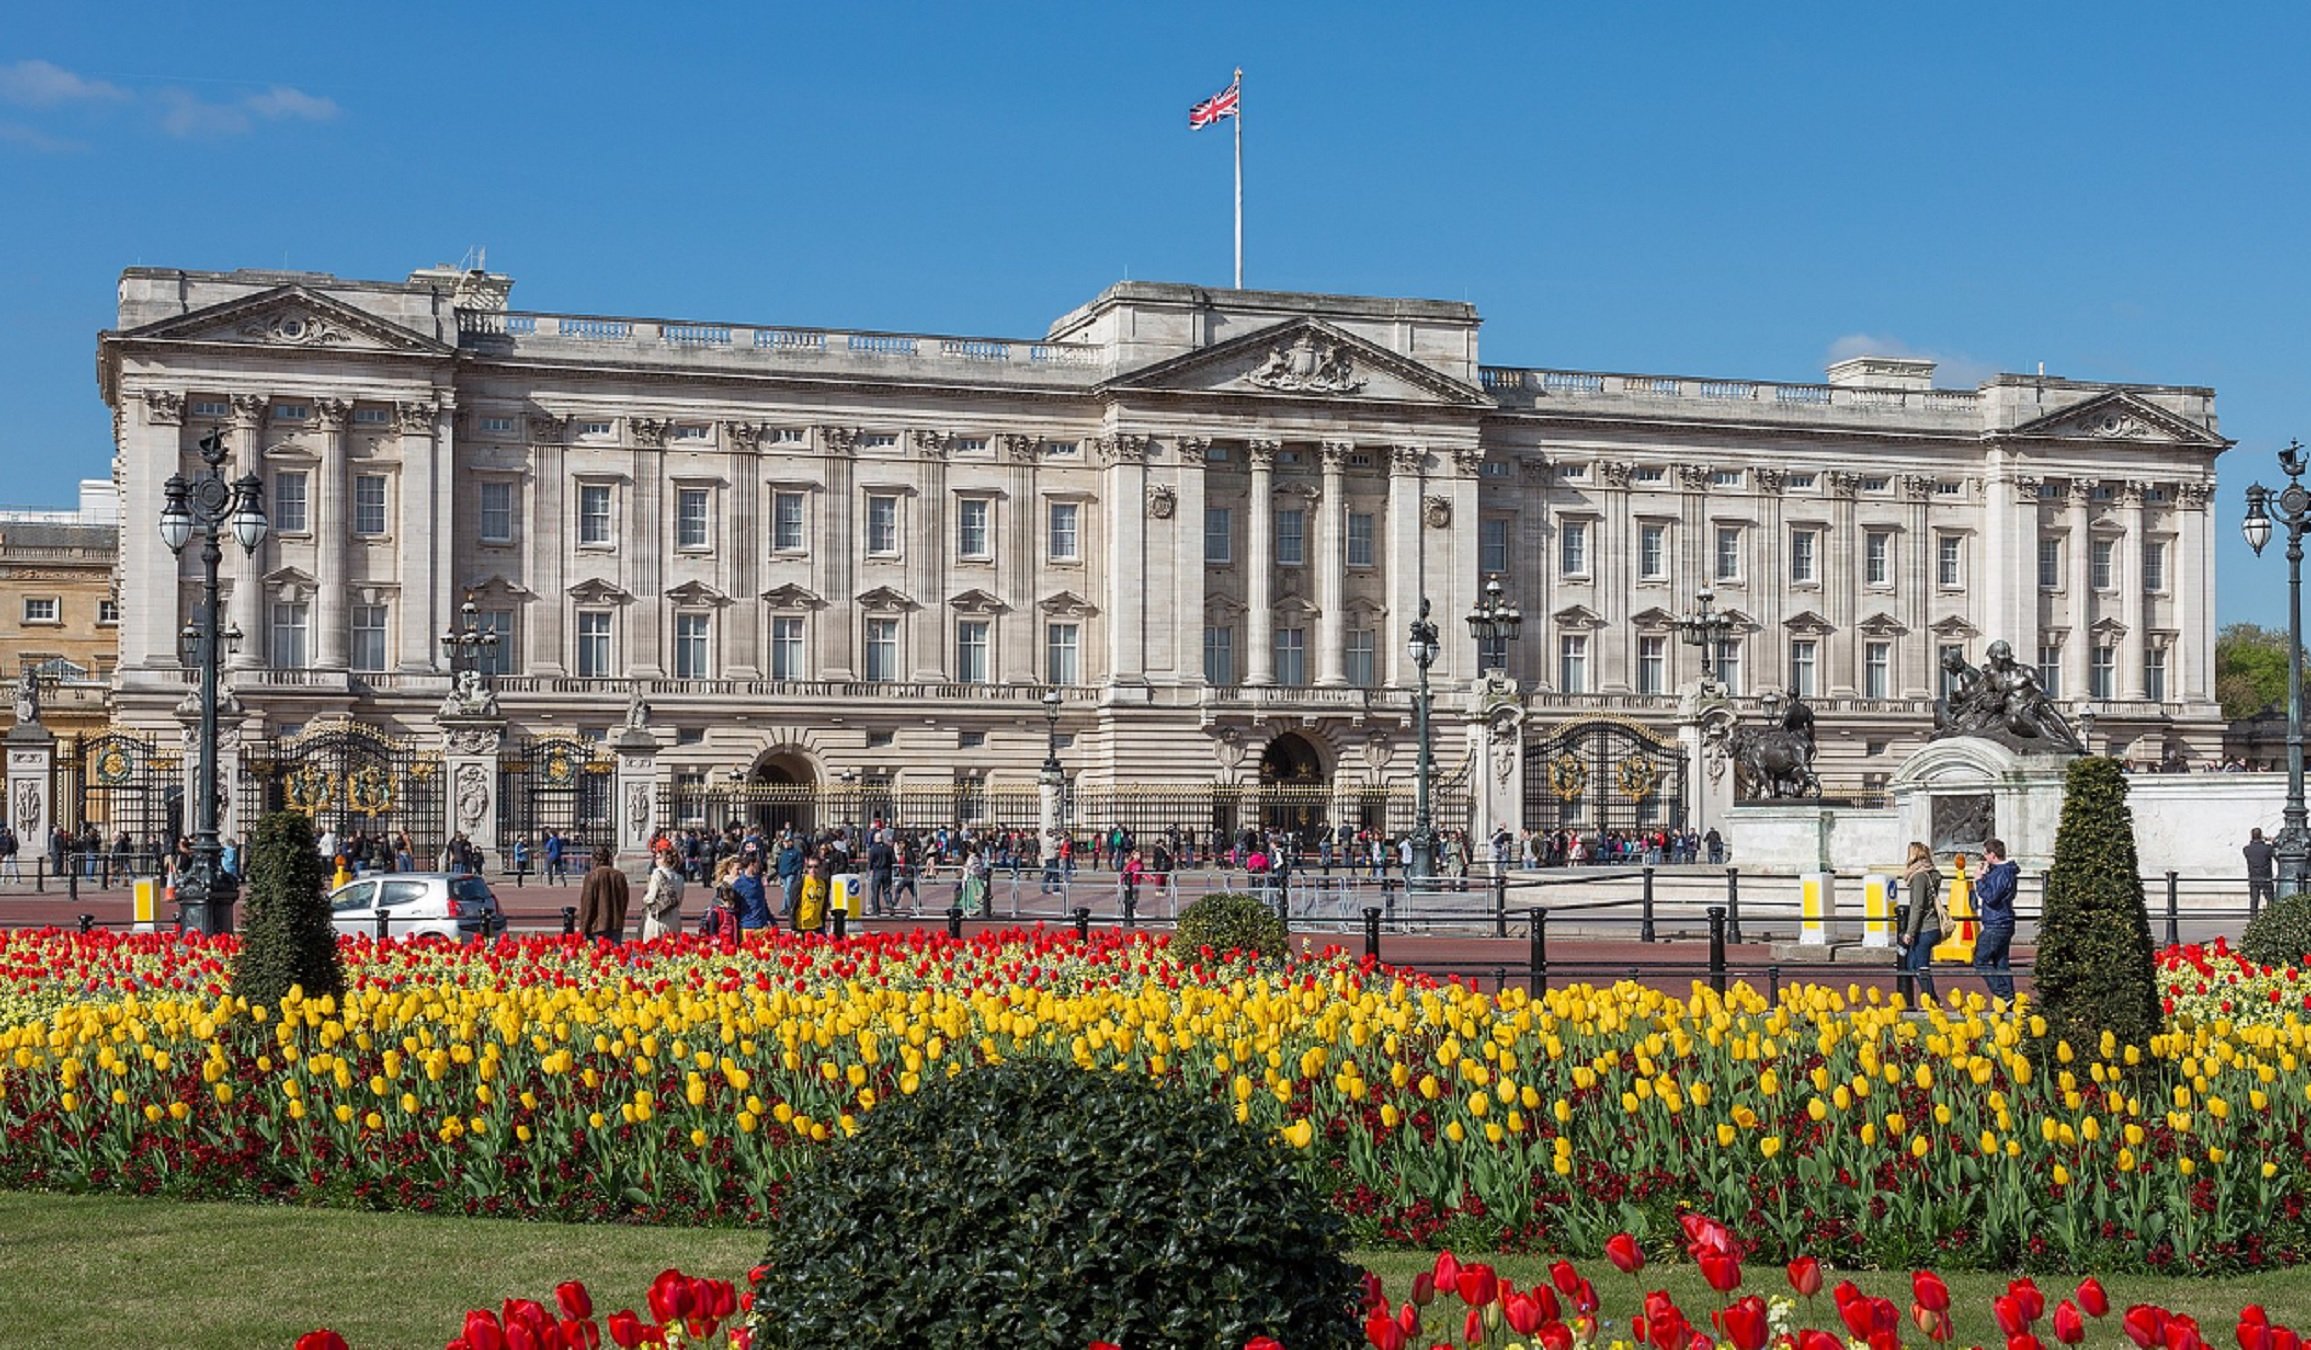 Buckingham Palace   Wikipedia